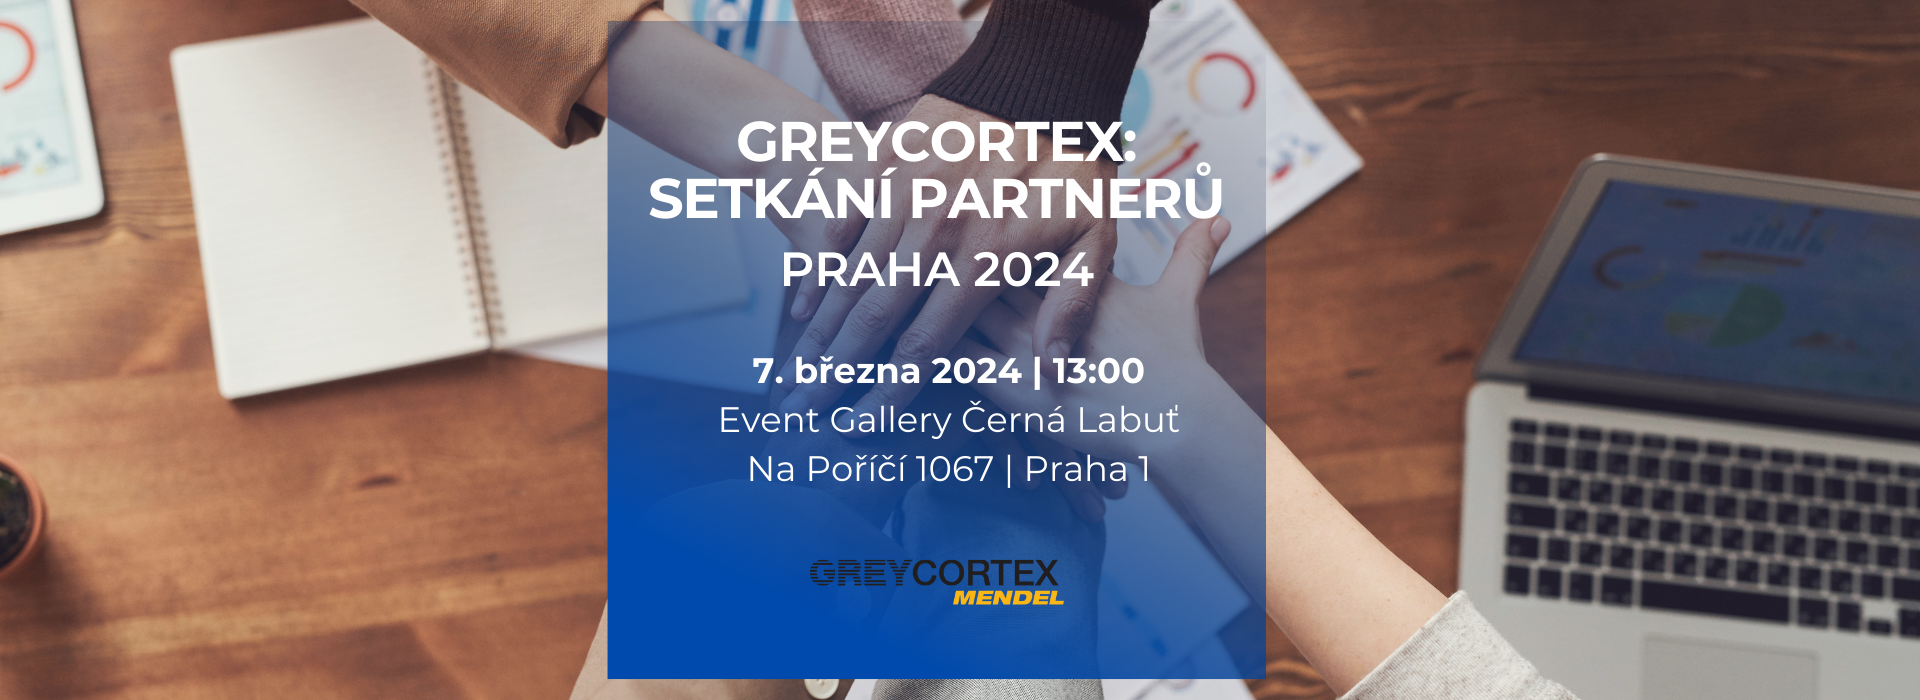 GREYCORTEX: Setkání partnerů 2024